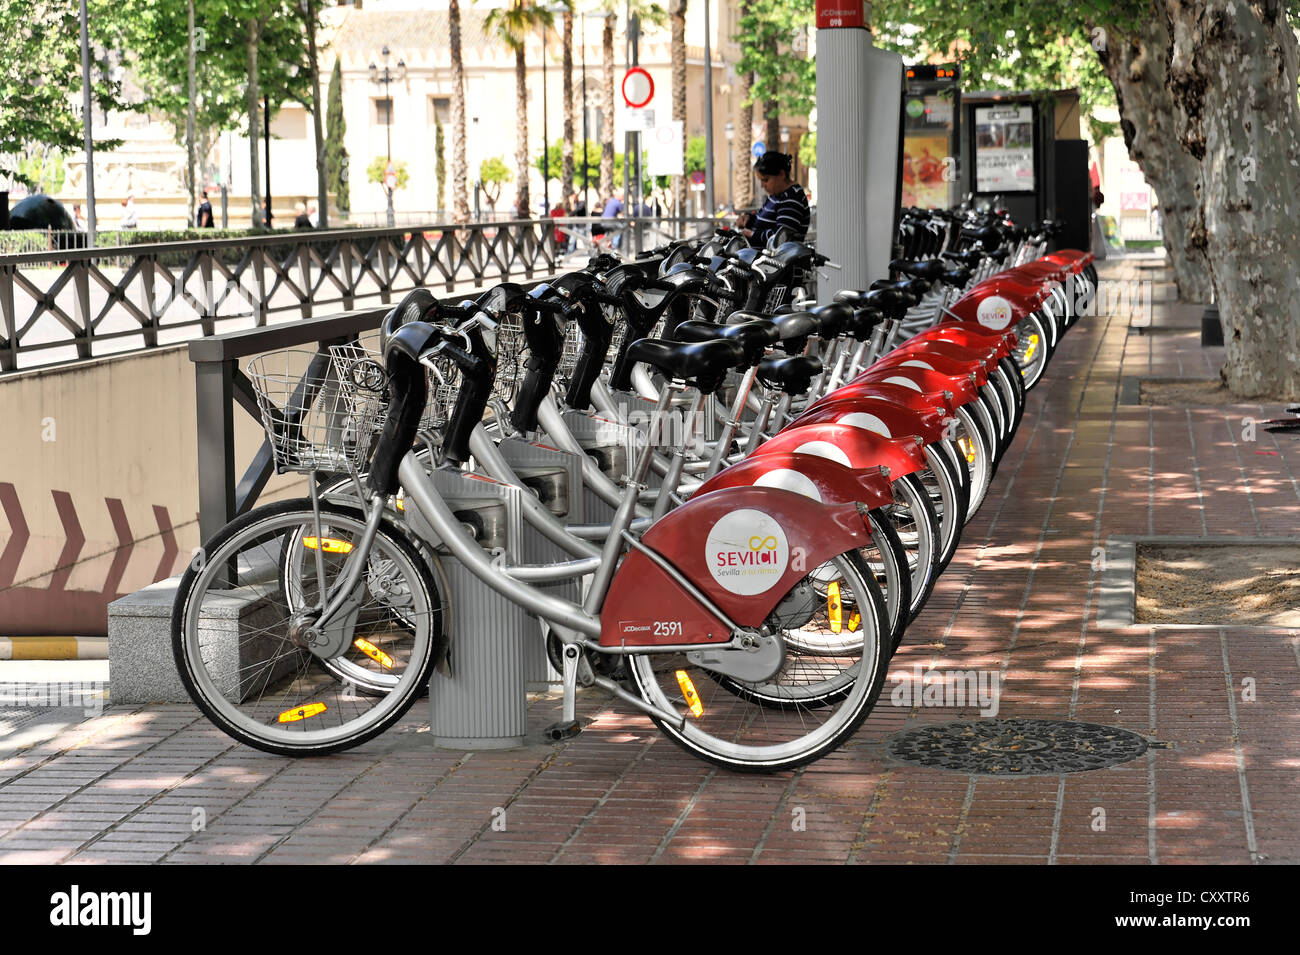 Fahrräder zu vermieten, Fahrradverleih, Stadt Zentrum, Sevilla, Andalusien,  Spanien, Europa Stockfotografie - Alamy